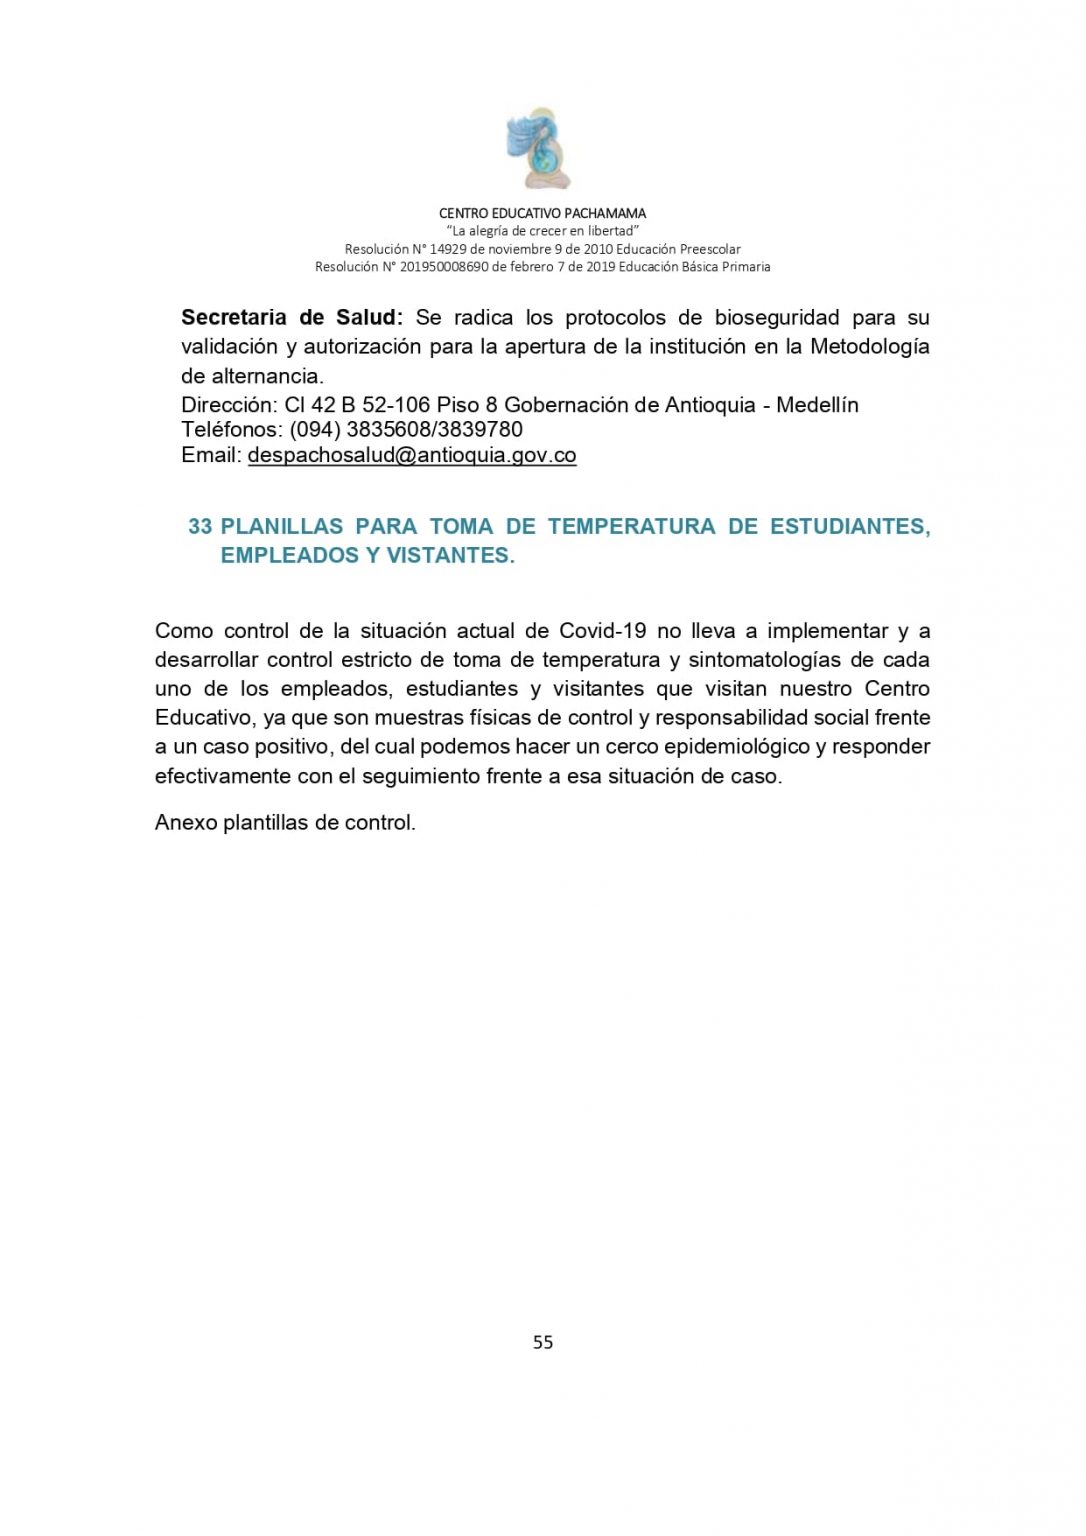 PROTOCOLO DE BIOSEGURIDAD PACHAMAMA Última Versión (3)-convertido_page-0055